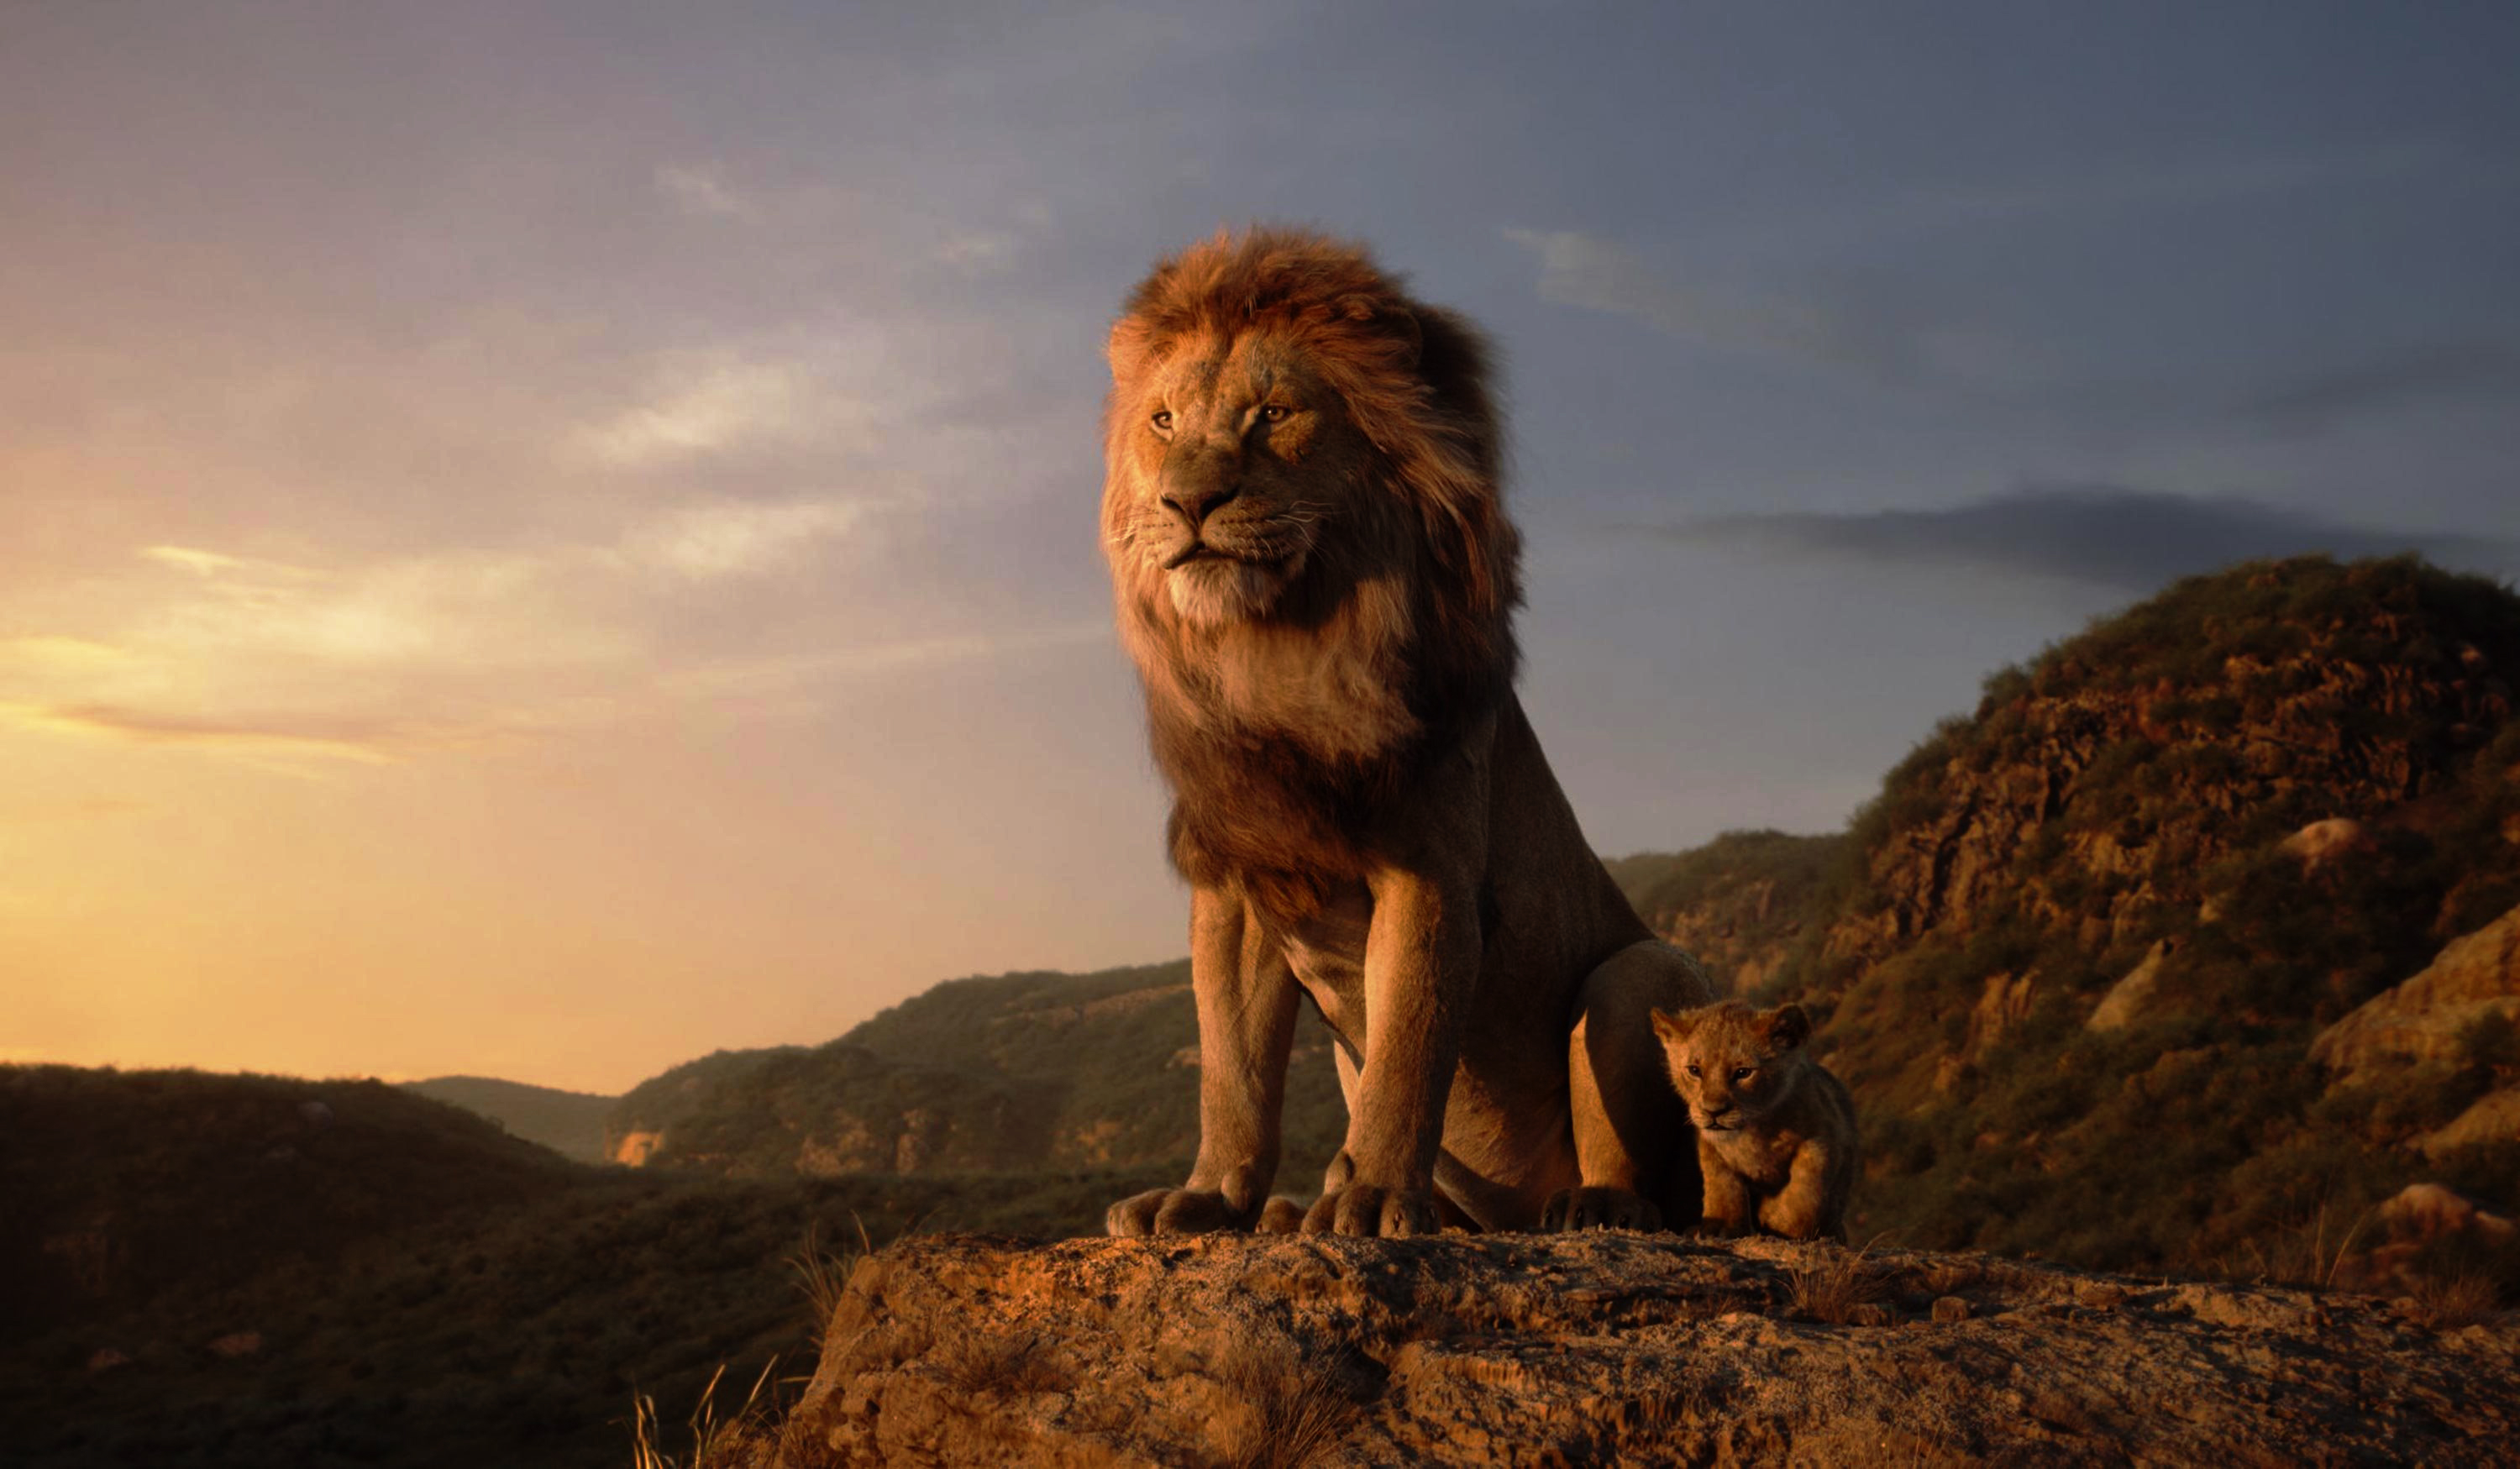 Cánh đồng Châu Phi rực rỡ tuyệt đẹp của The Lion King đã được chuyển đổi thành một hình nền tuyệt vời 4k Wallpaper. Hãy tìm hiểu về bộ phim hoạt hình kinh điển này thông qua hình ảnh sống động và rực rỡ này.